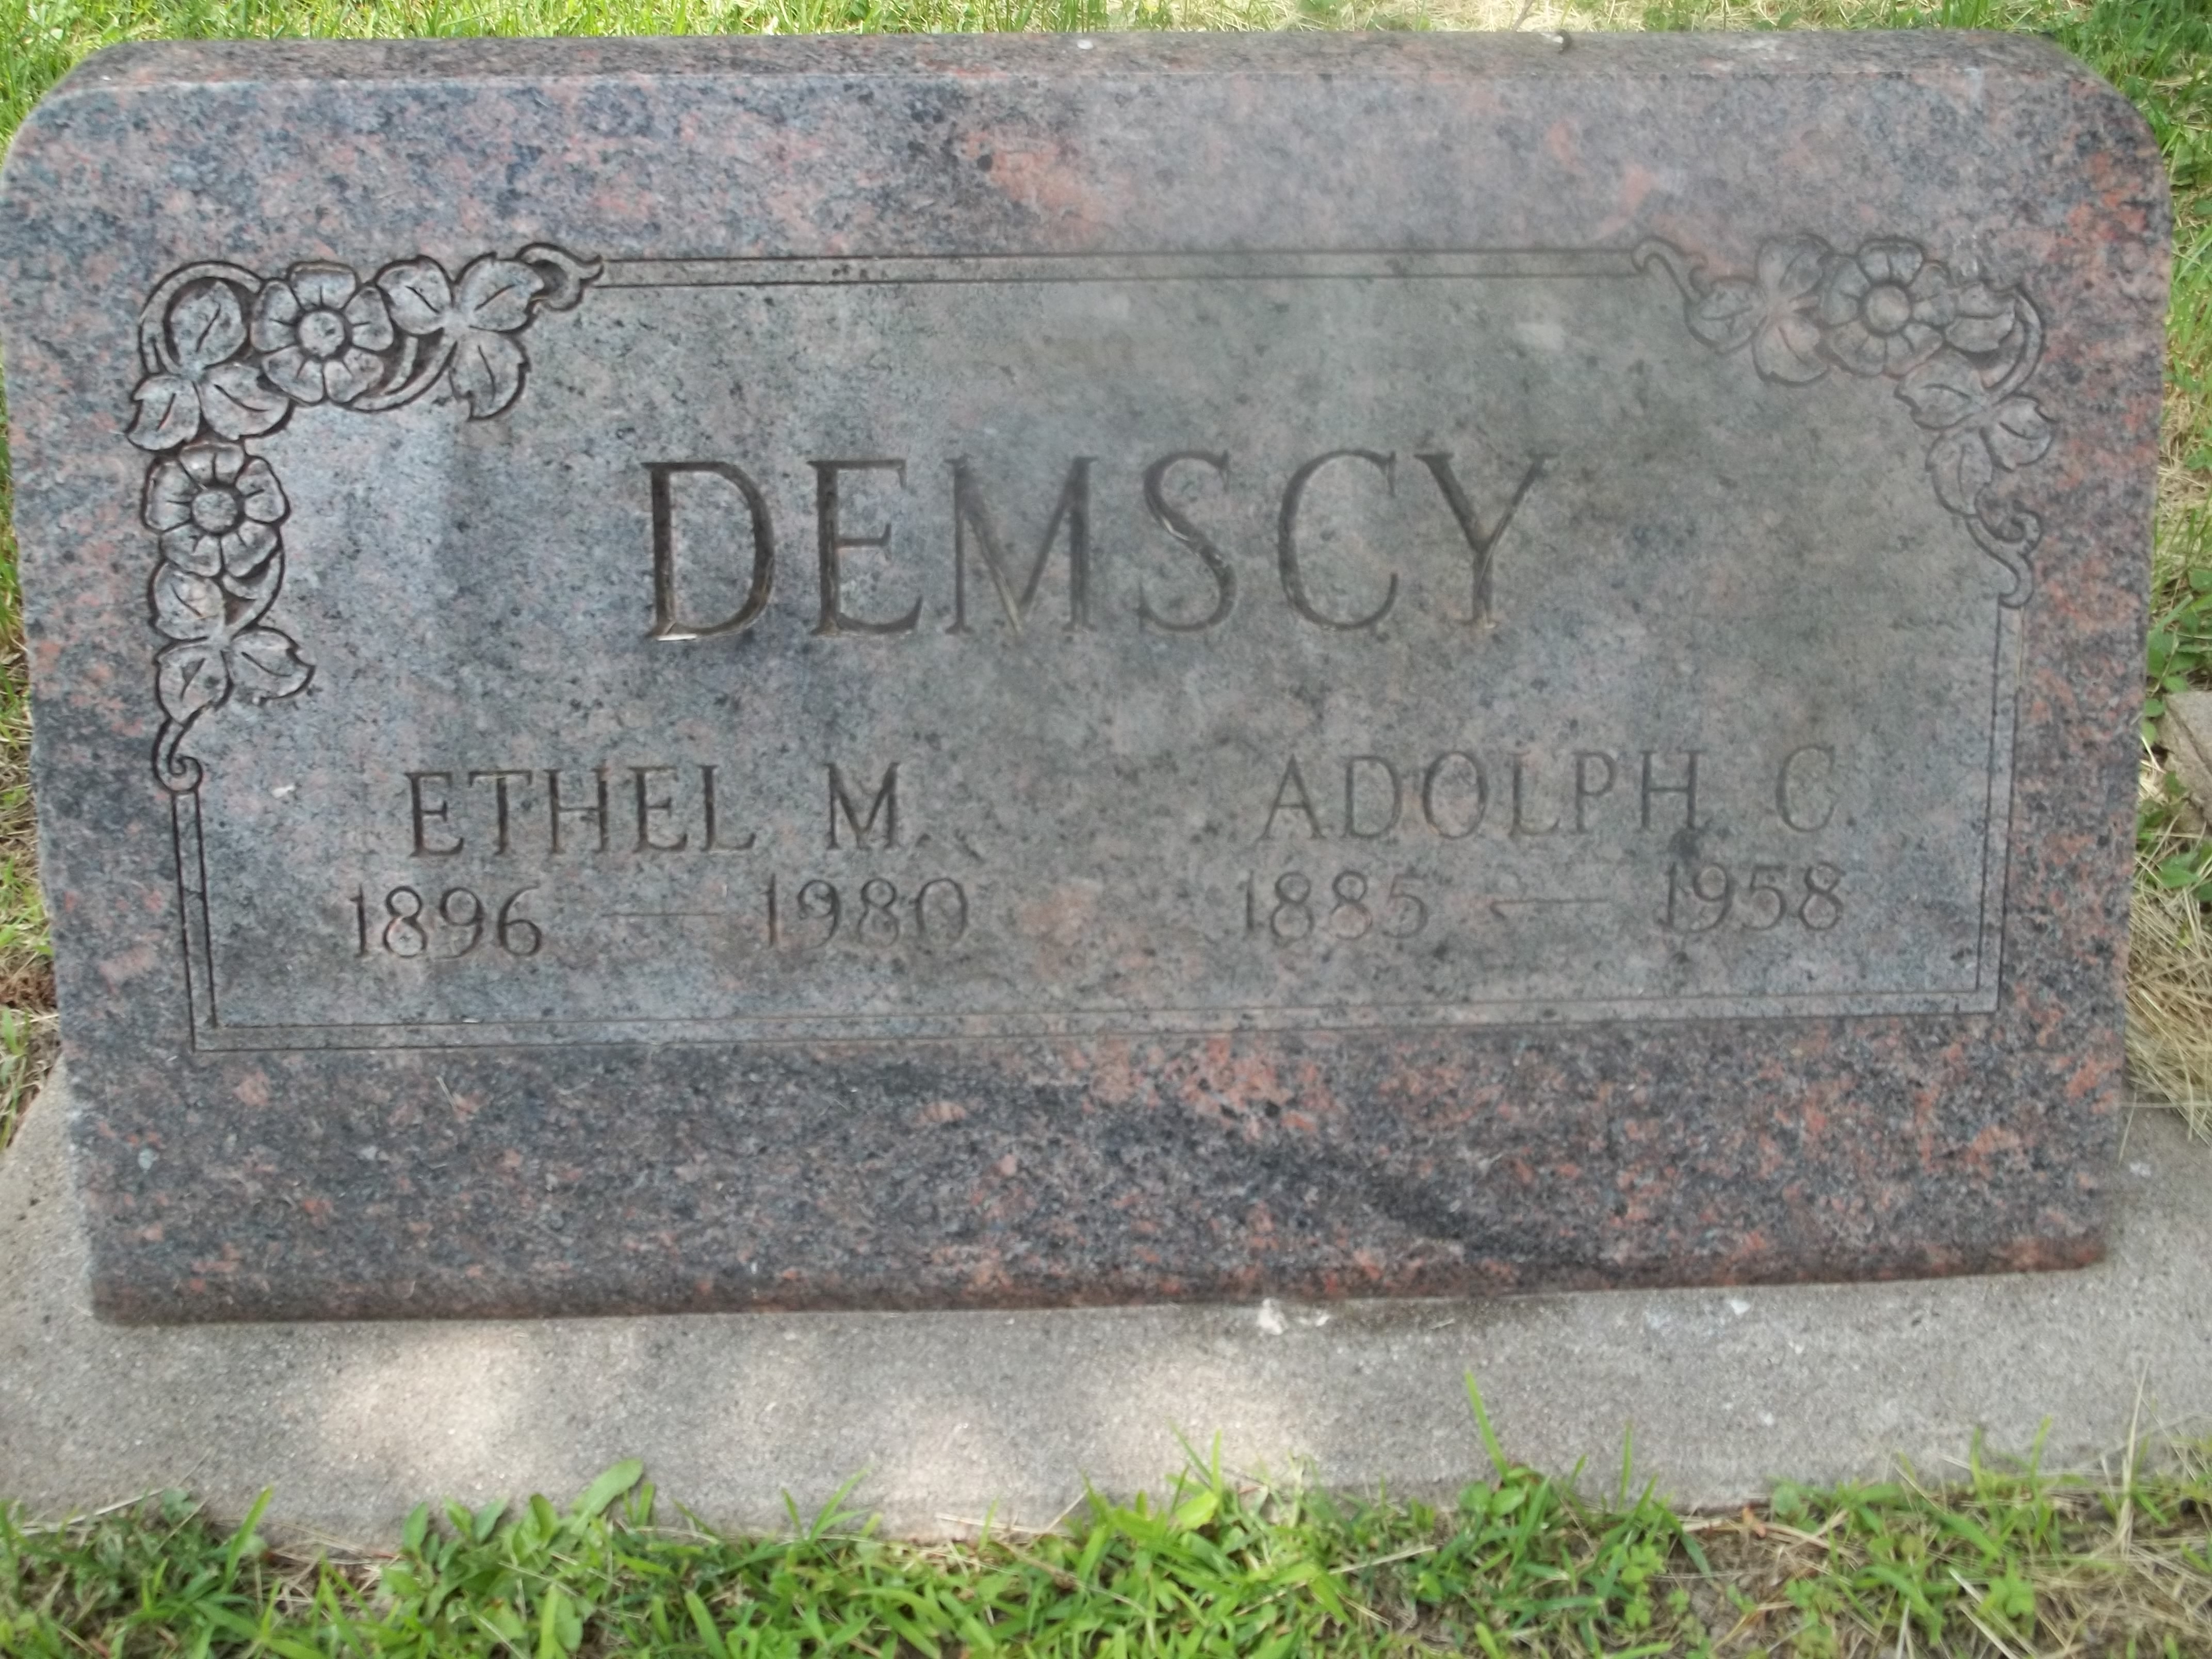 Adolph C. and Ethel M. Demscy Headstone